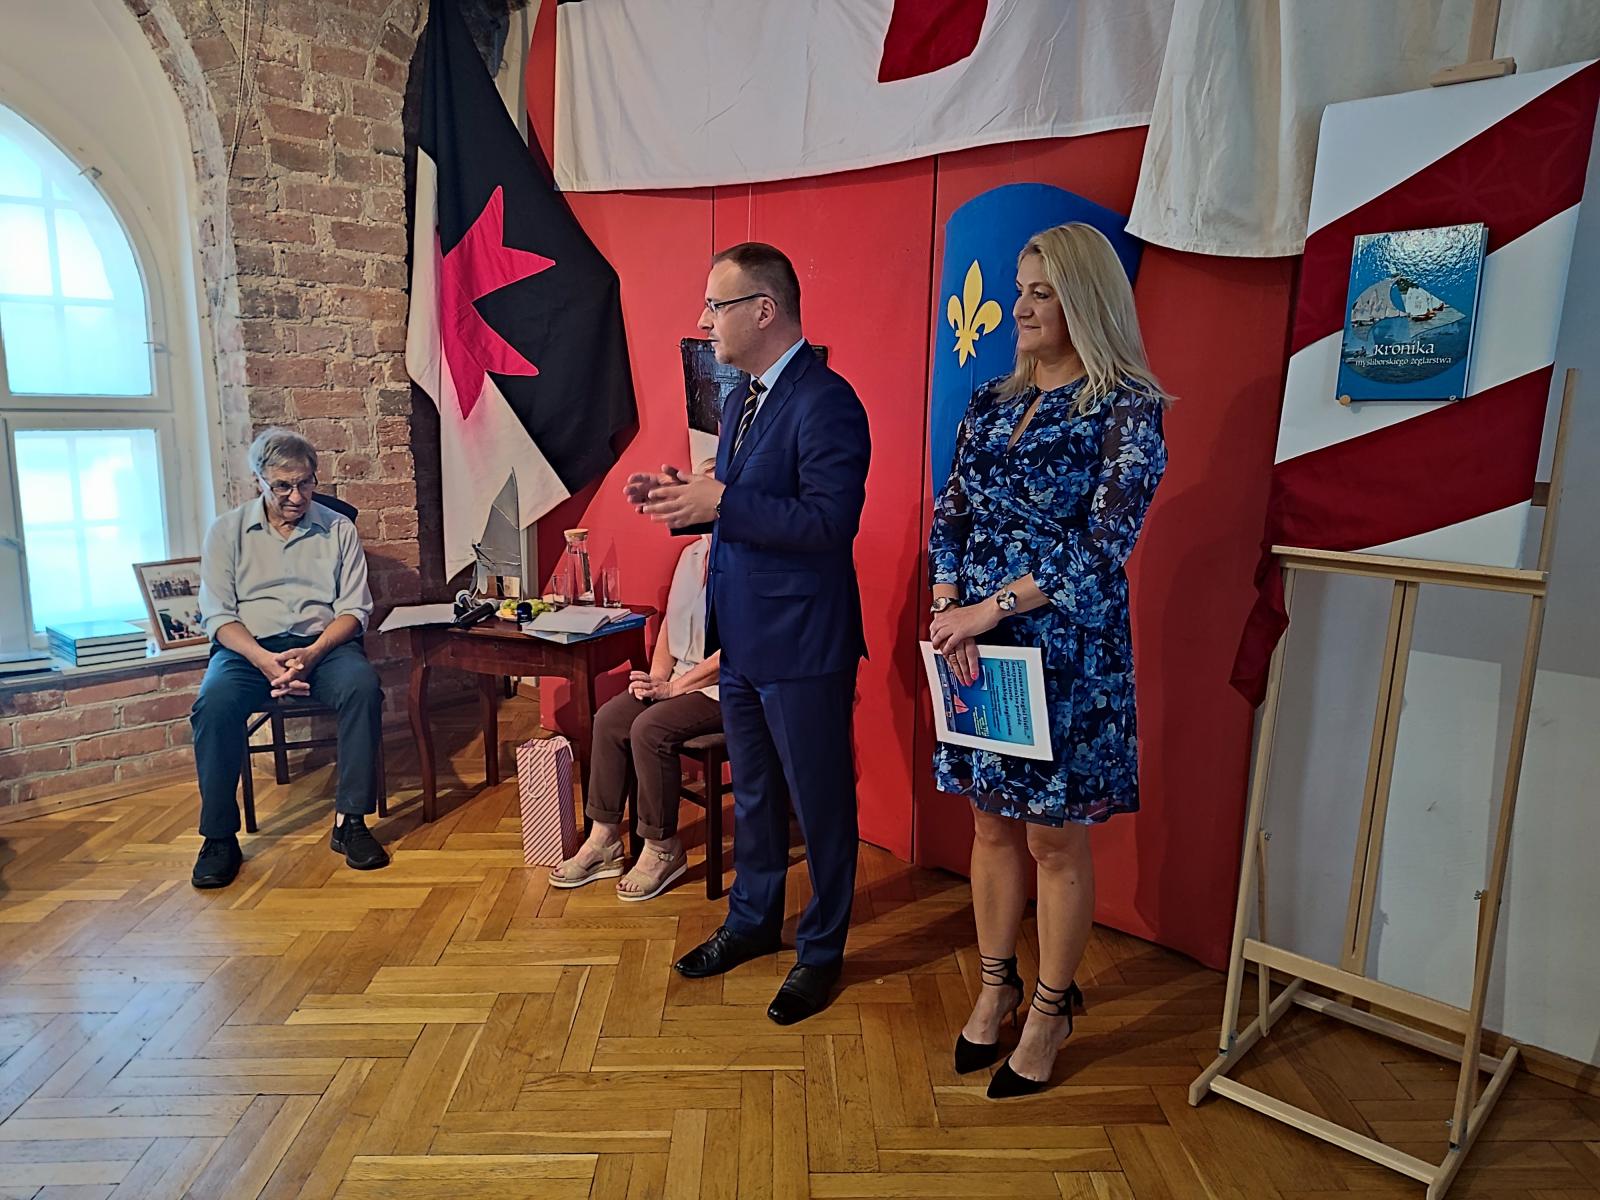 Burmistrz, Dyrektor Muzeum i Ryszard Szymczyk przed publicznością